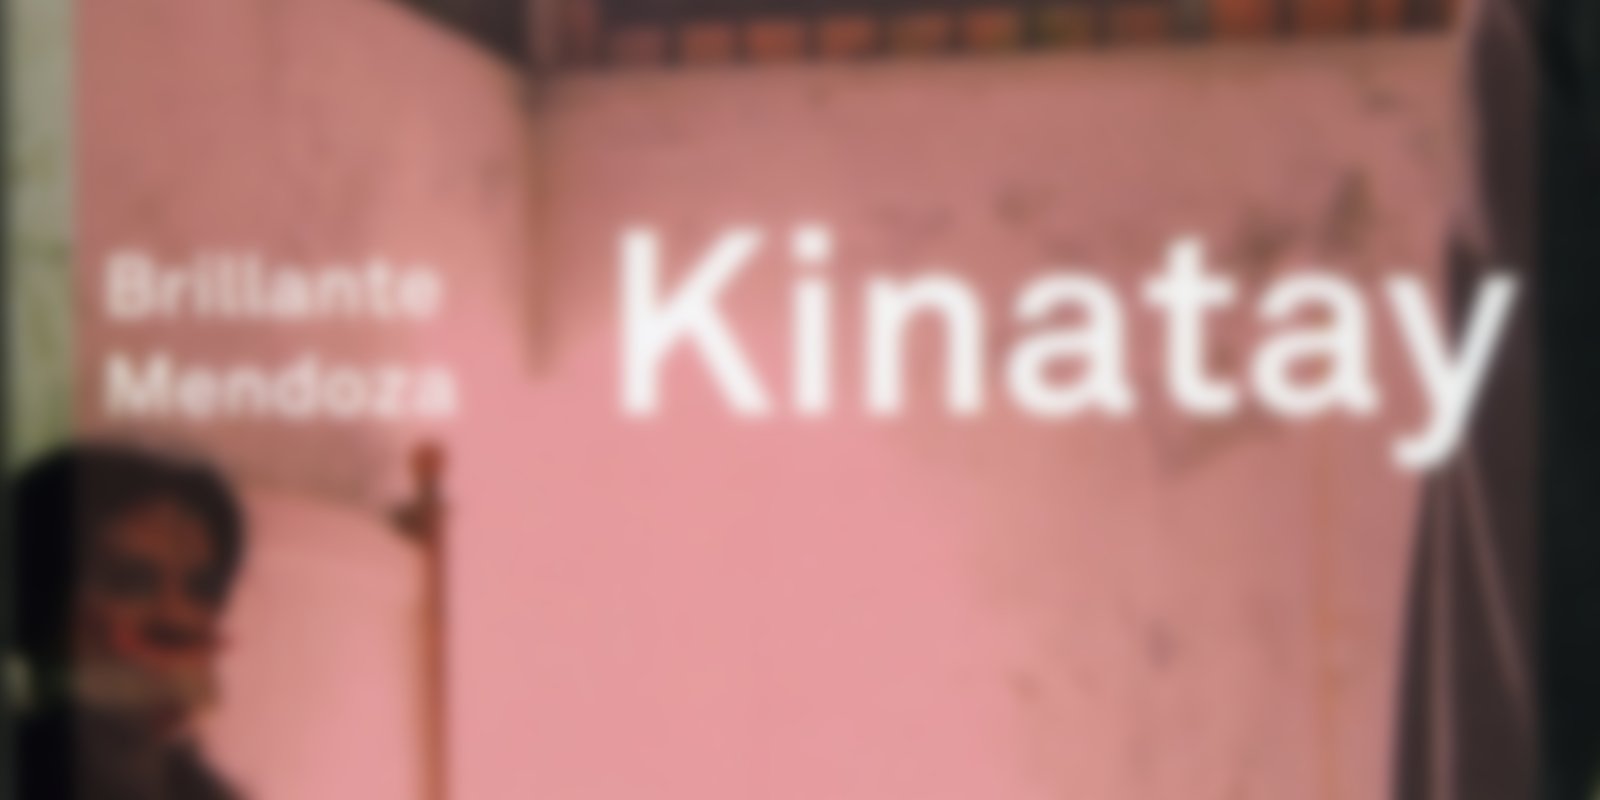 Kinatay